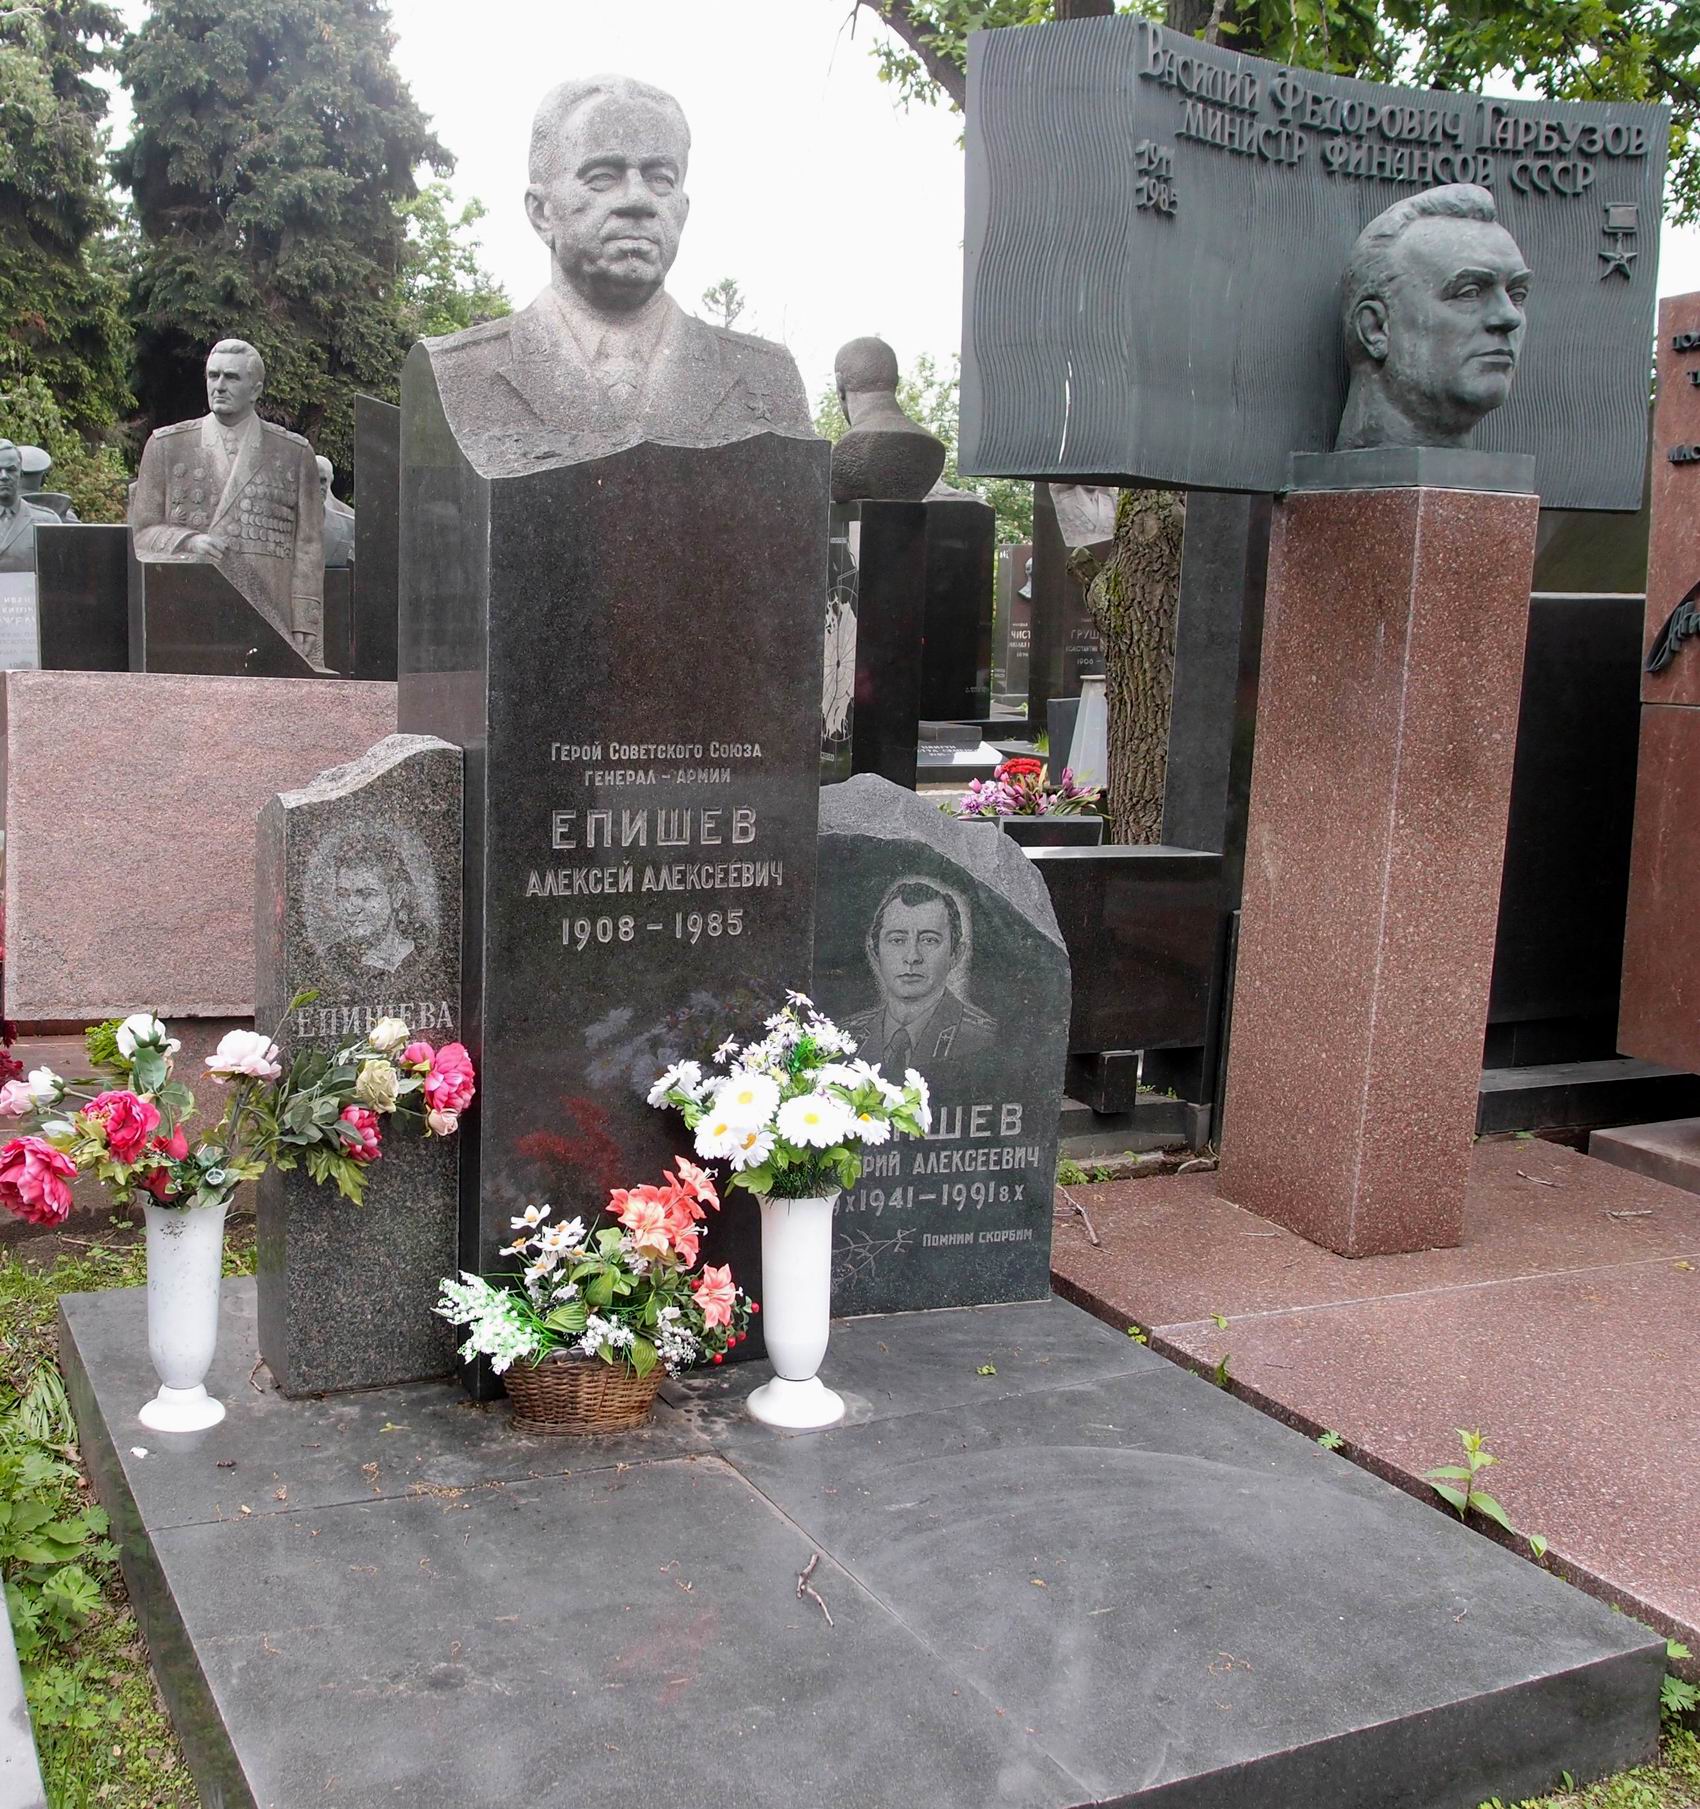 Памятник на могиле Епишева А.А. (1908-1985), ск. В.Сонин, арх. Е.Ефремов, на Новодевичьем кладбище (7-22-2).